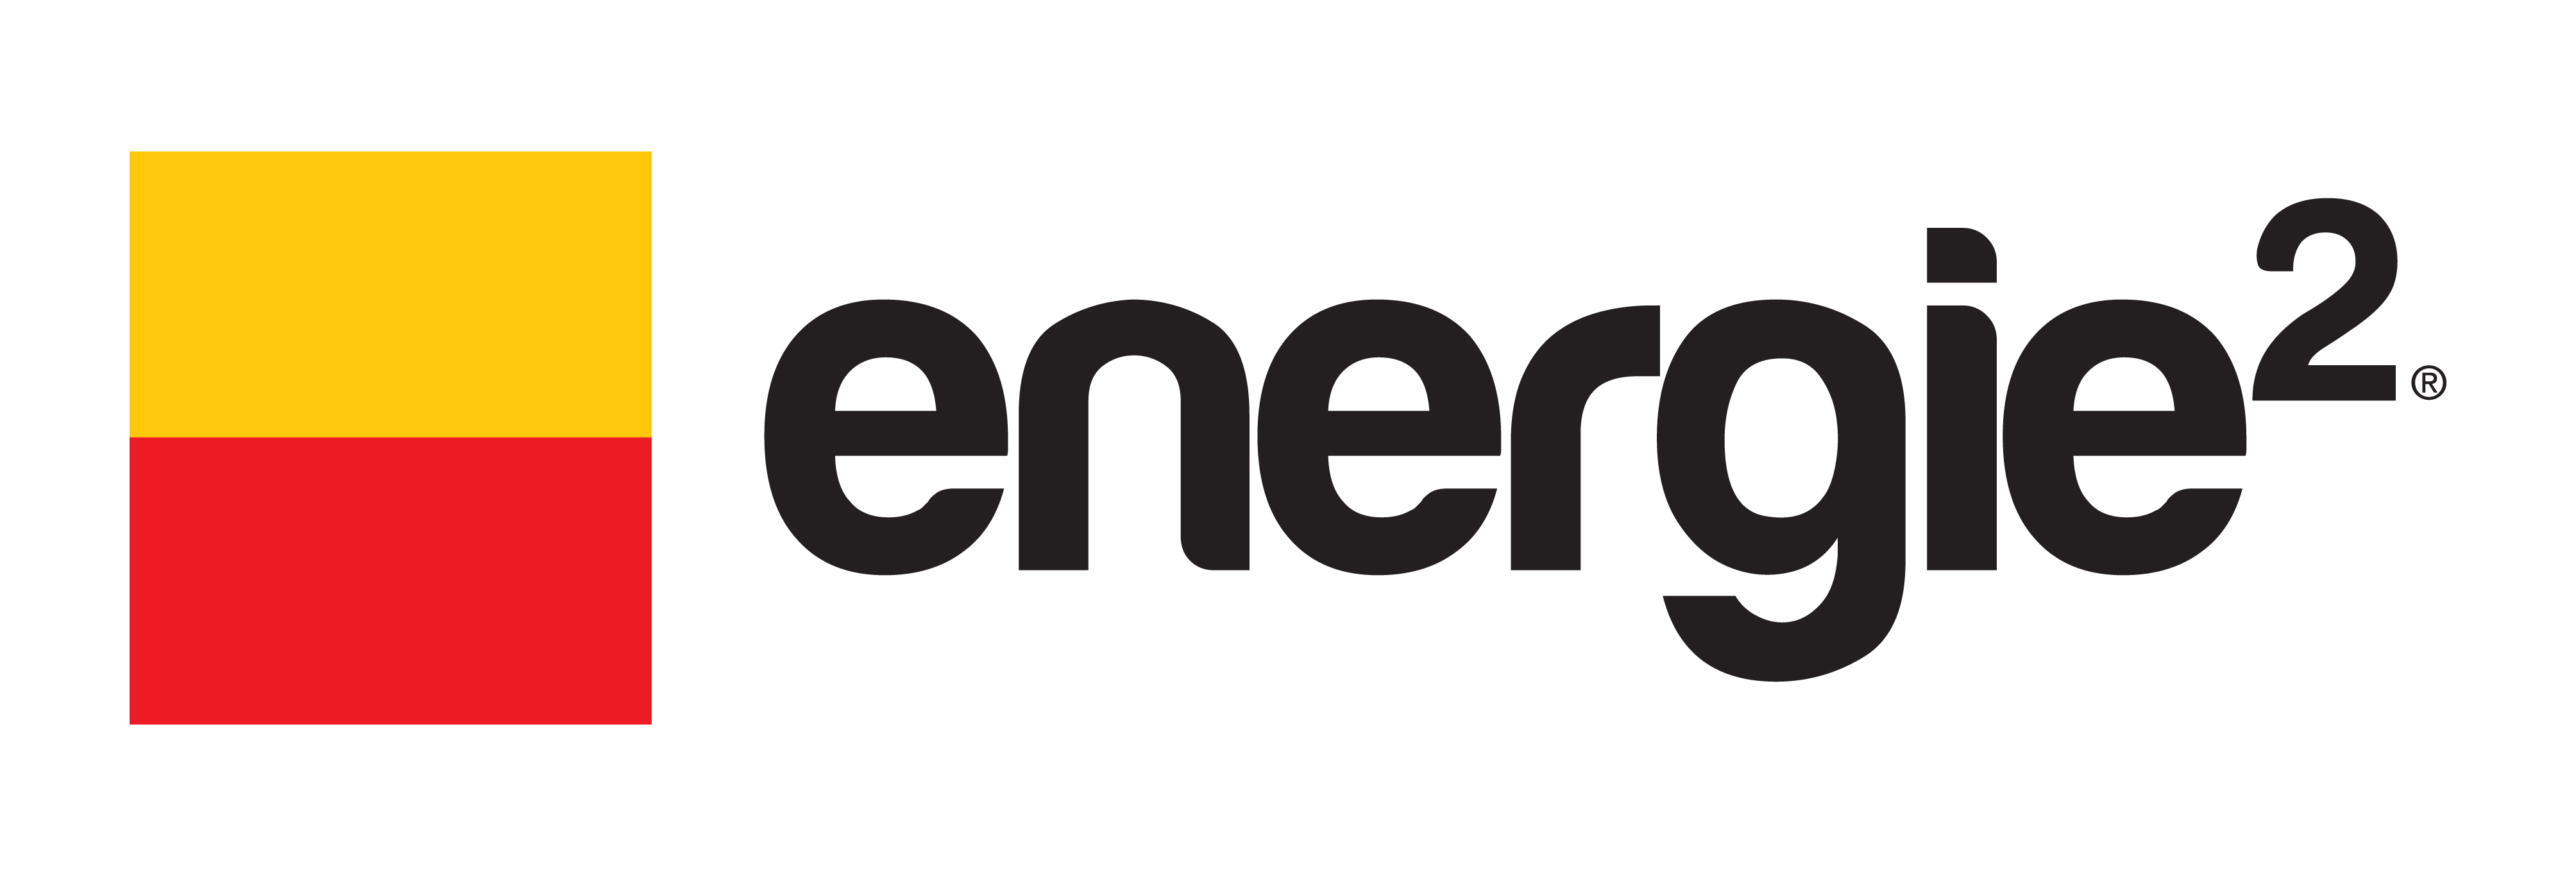 Energie2 znižuje ceny zemného plynu pre svojich odberateľov